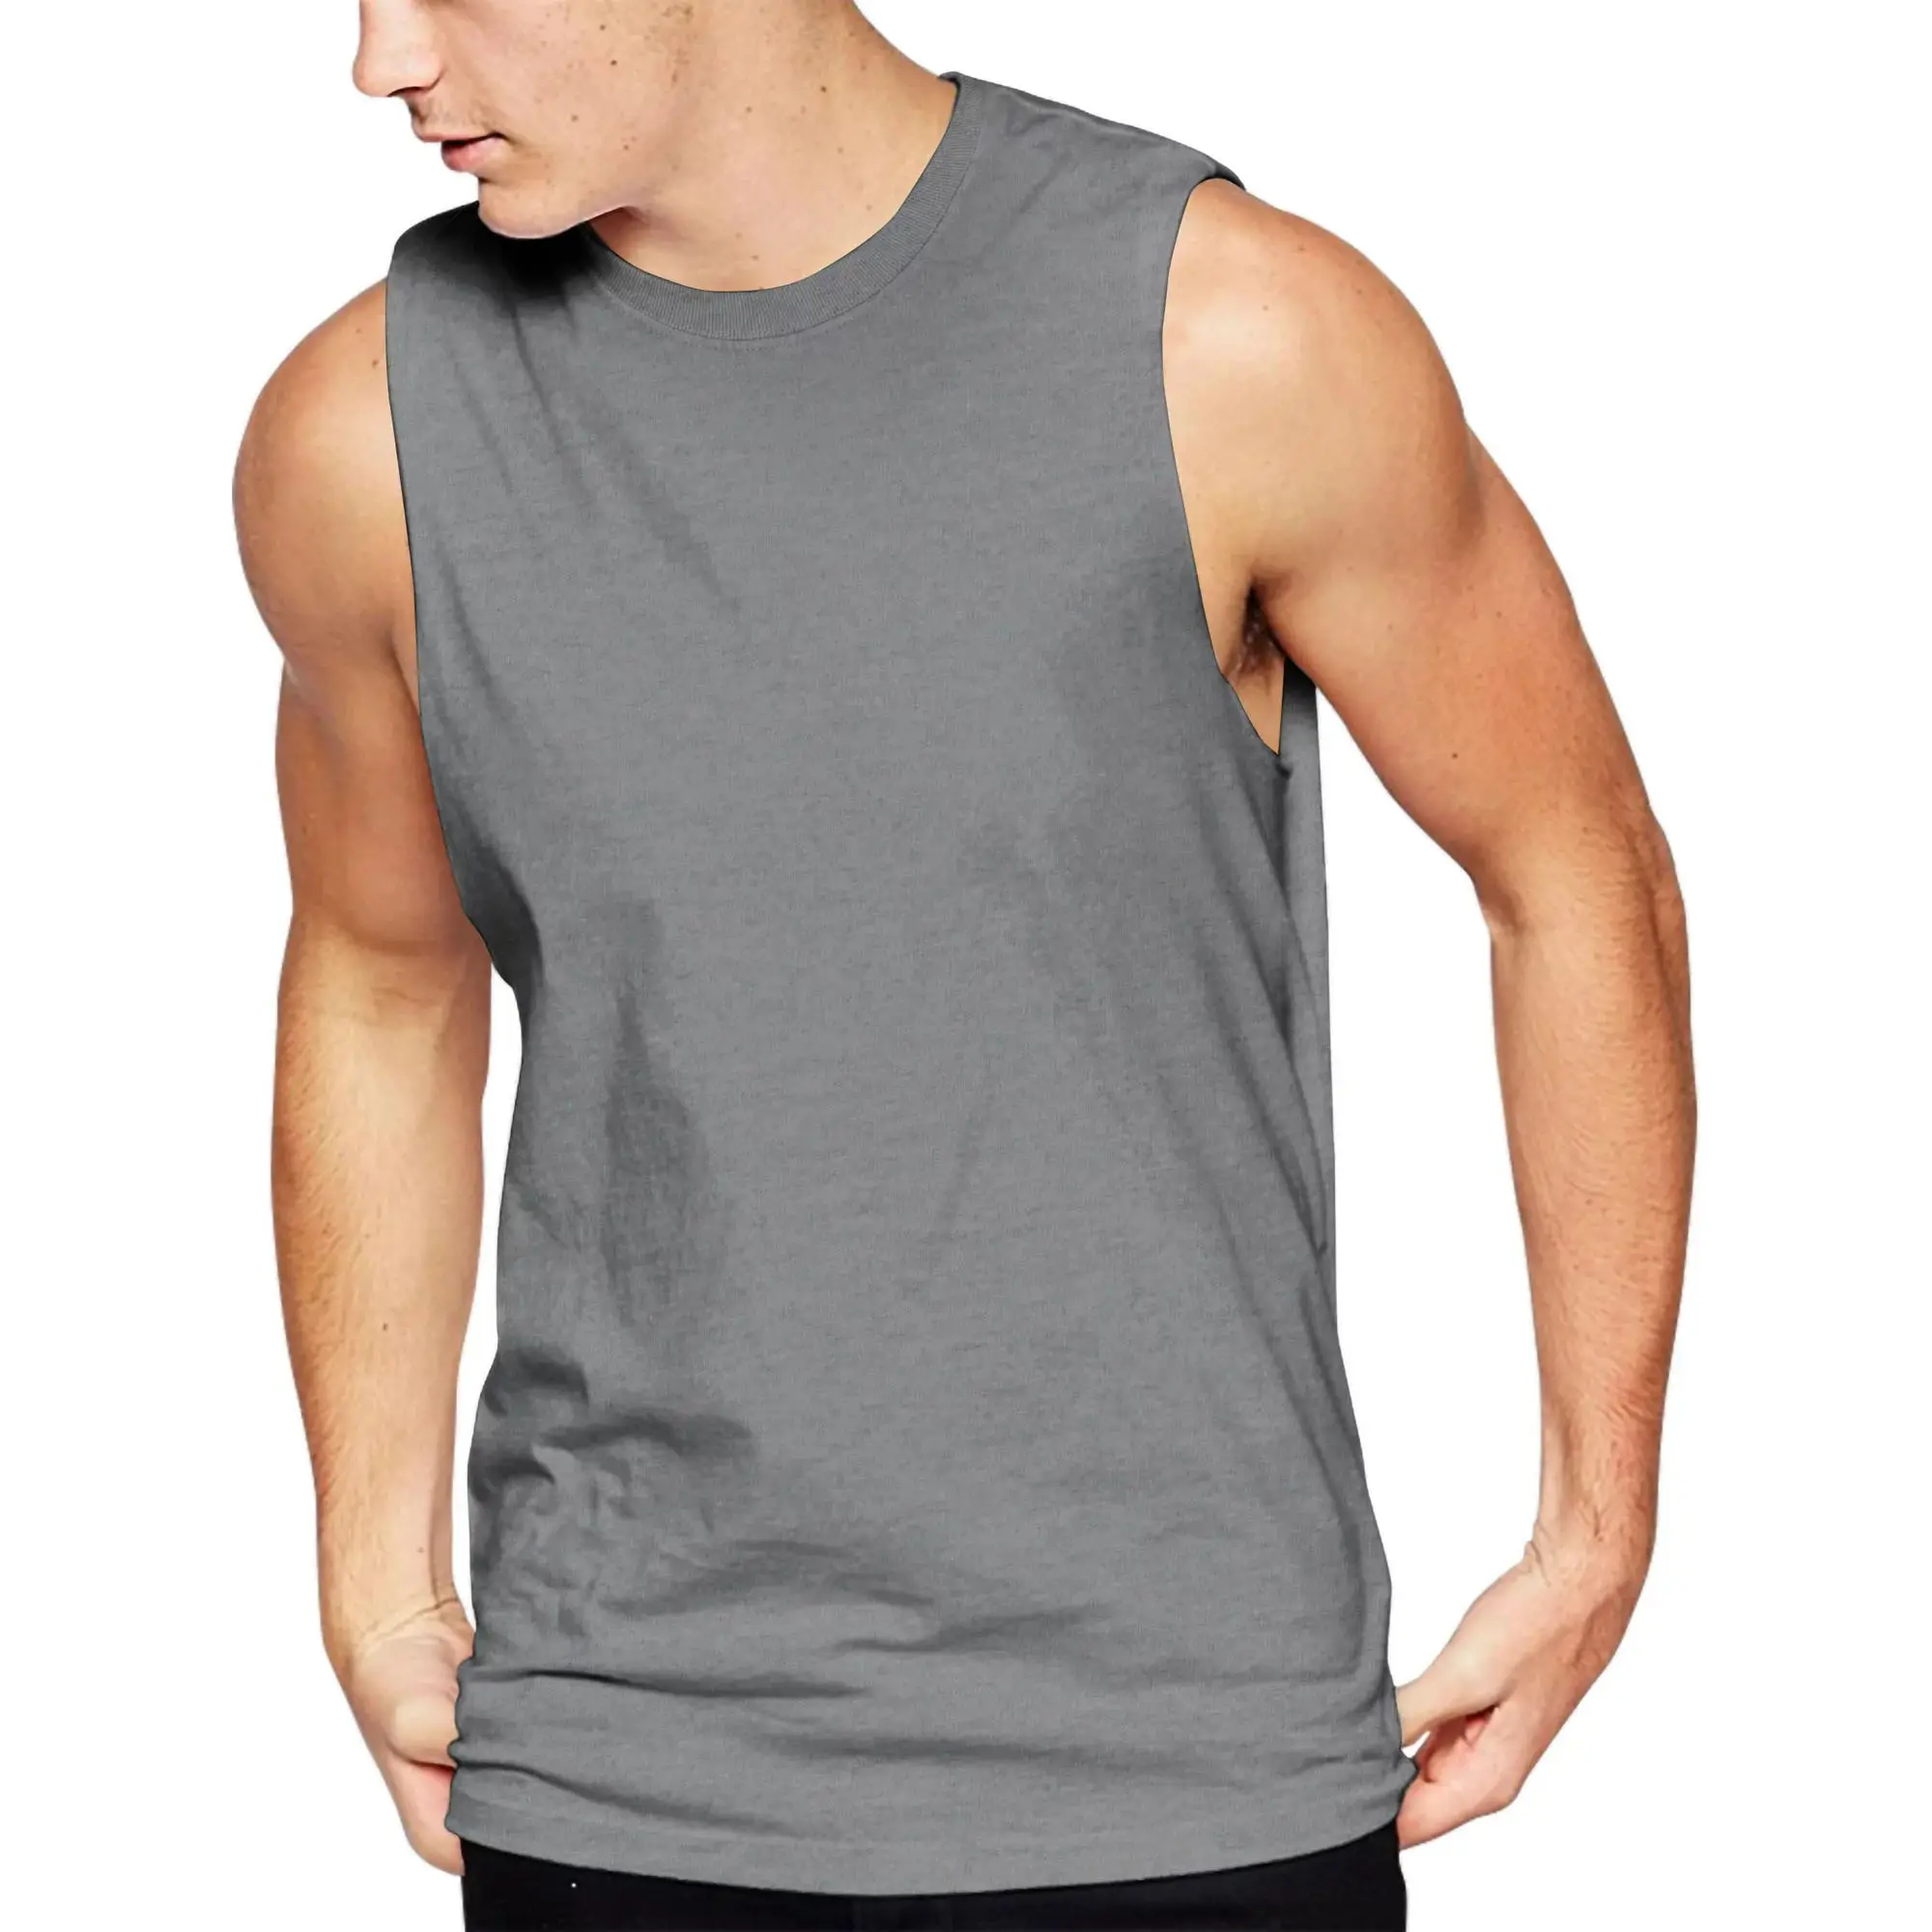 男性用グレーカラーノースリーブジムシャツ綿100% 製大人用サマーワークアウトスポーツシャツ